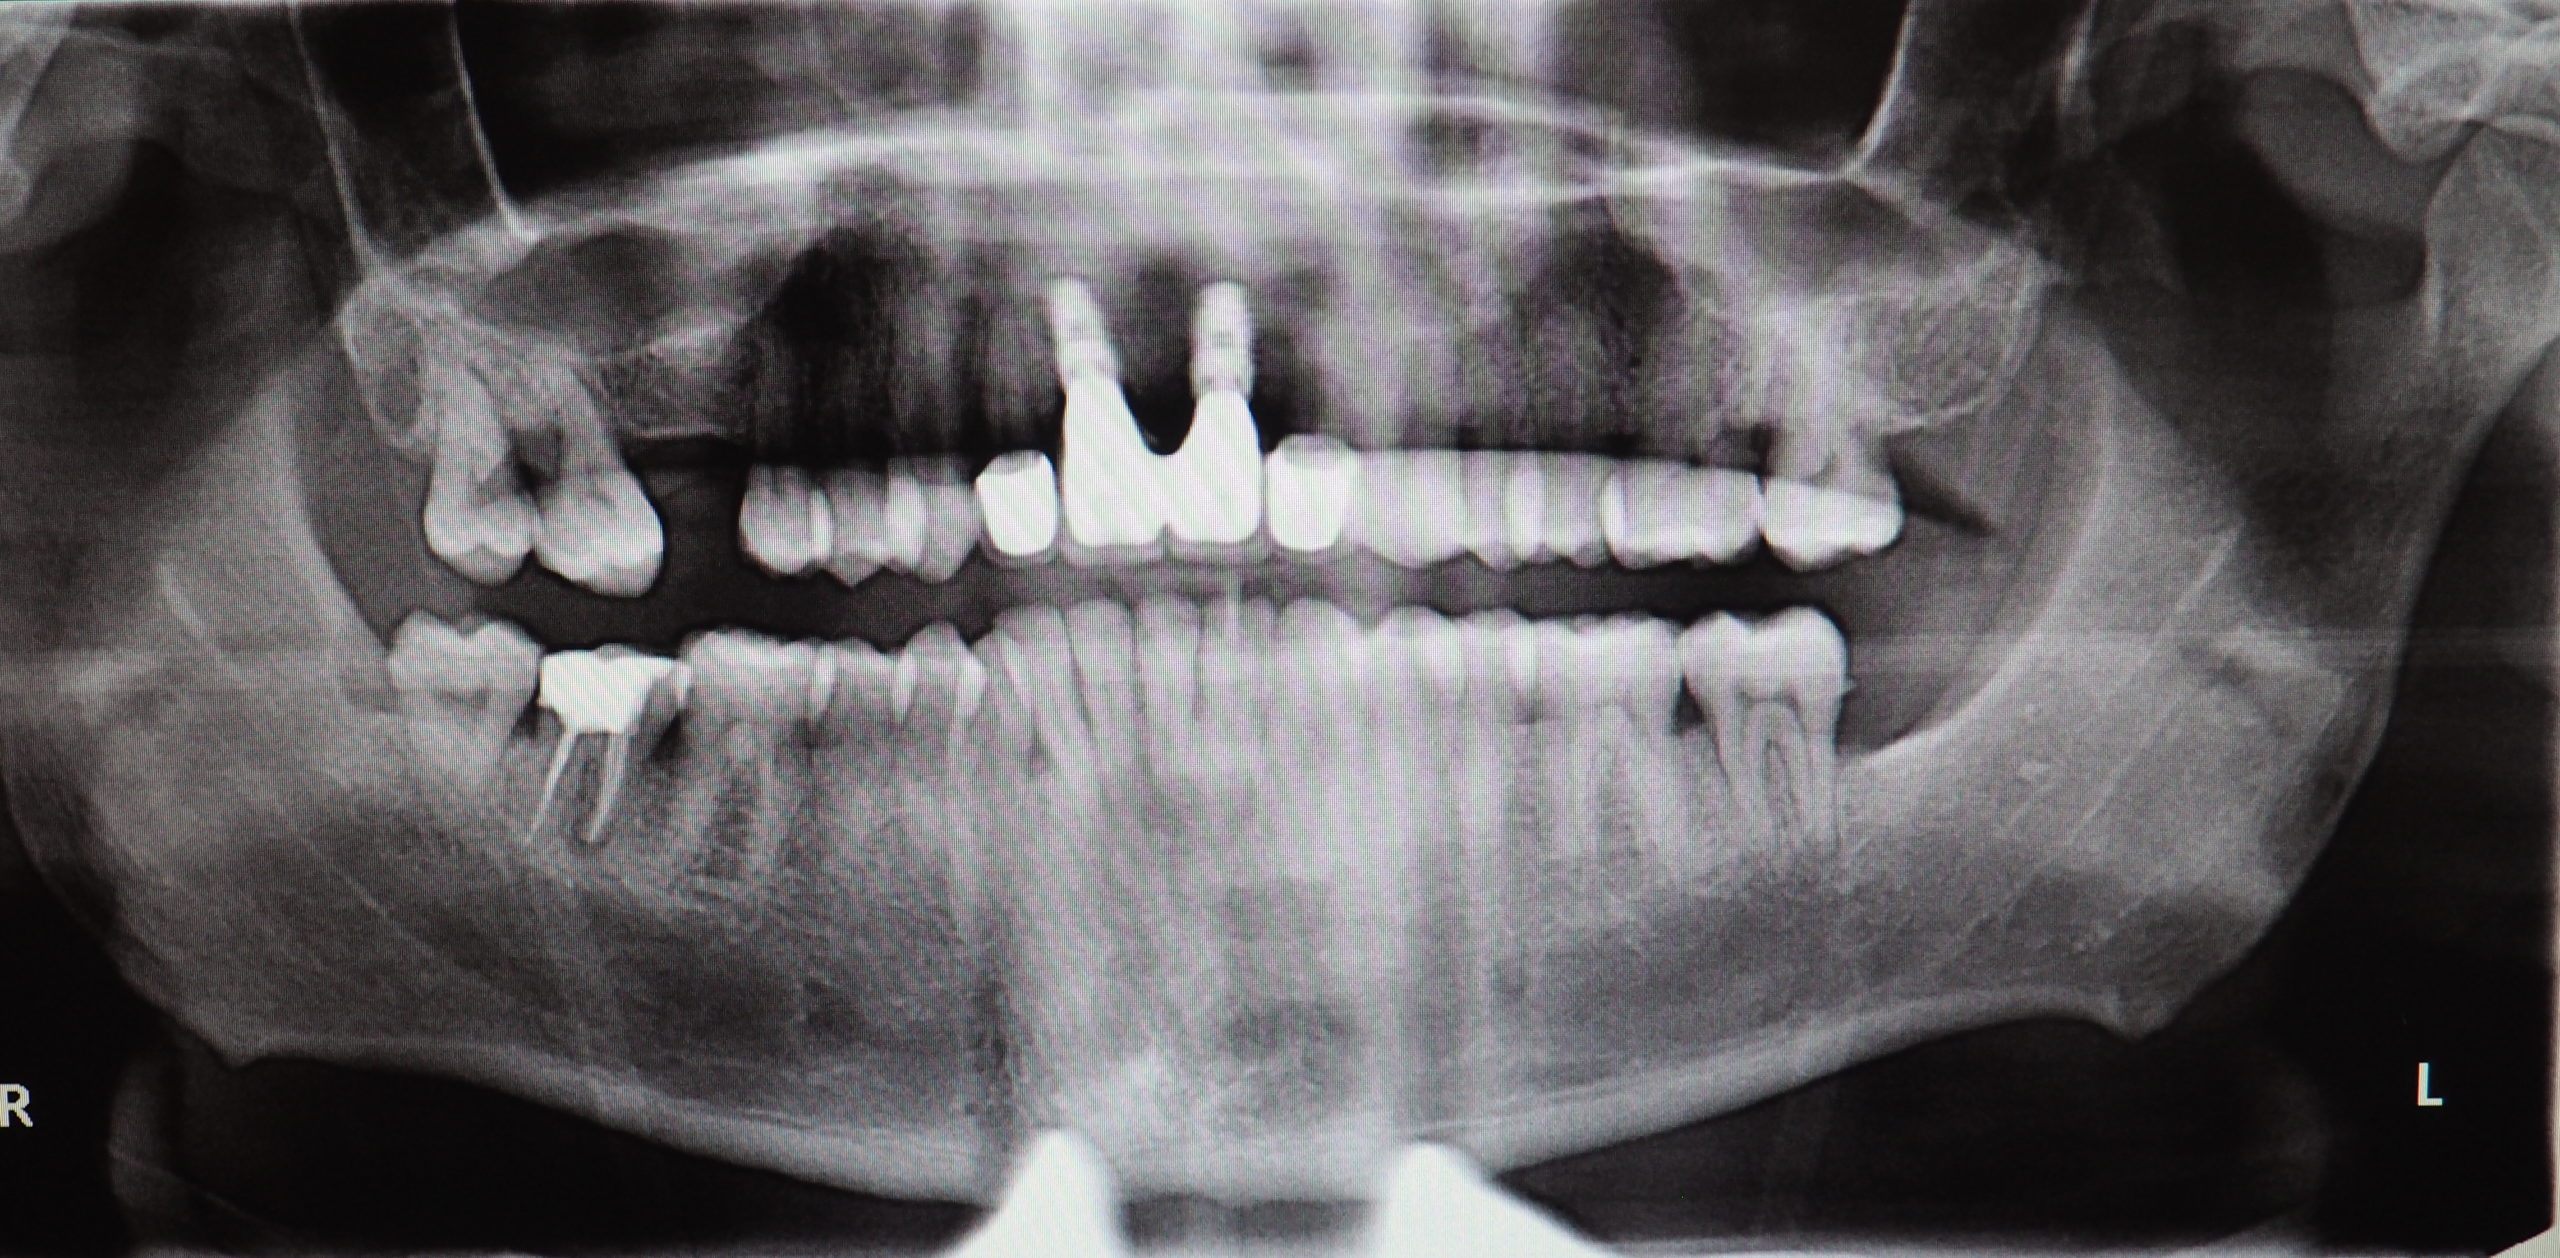 Sonrisa gingival y rehabilitación mediante implantes inmediatos en sector anterosuperior